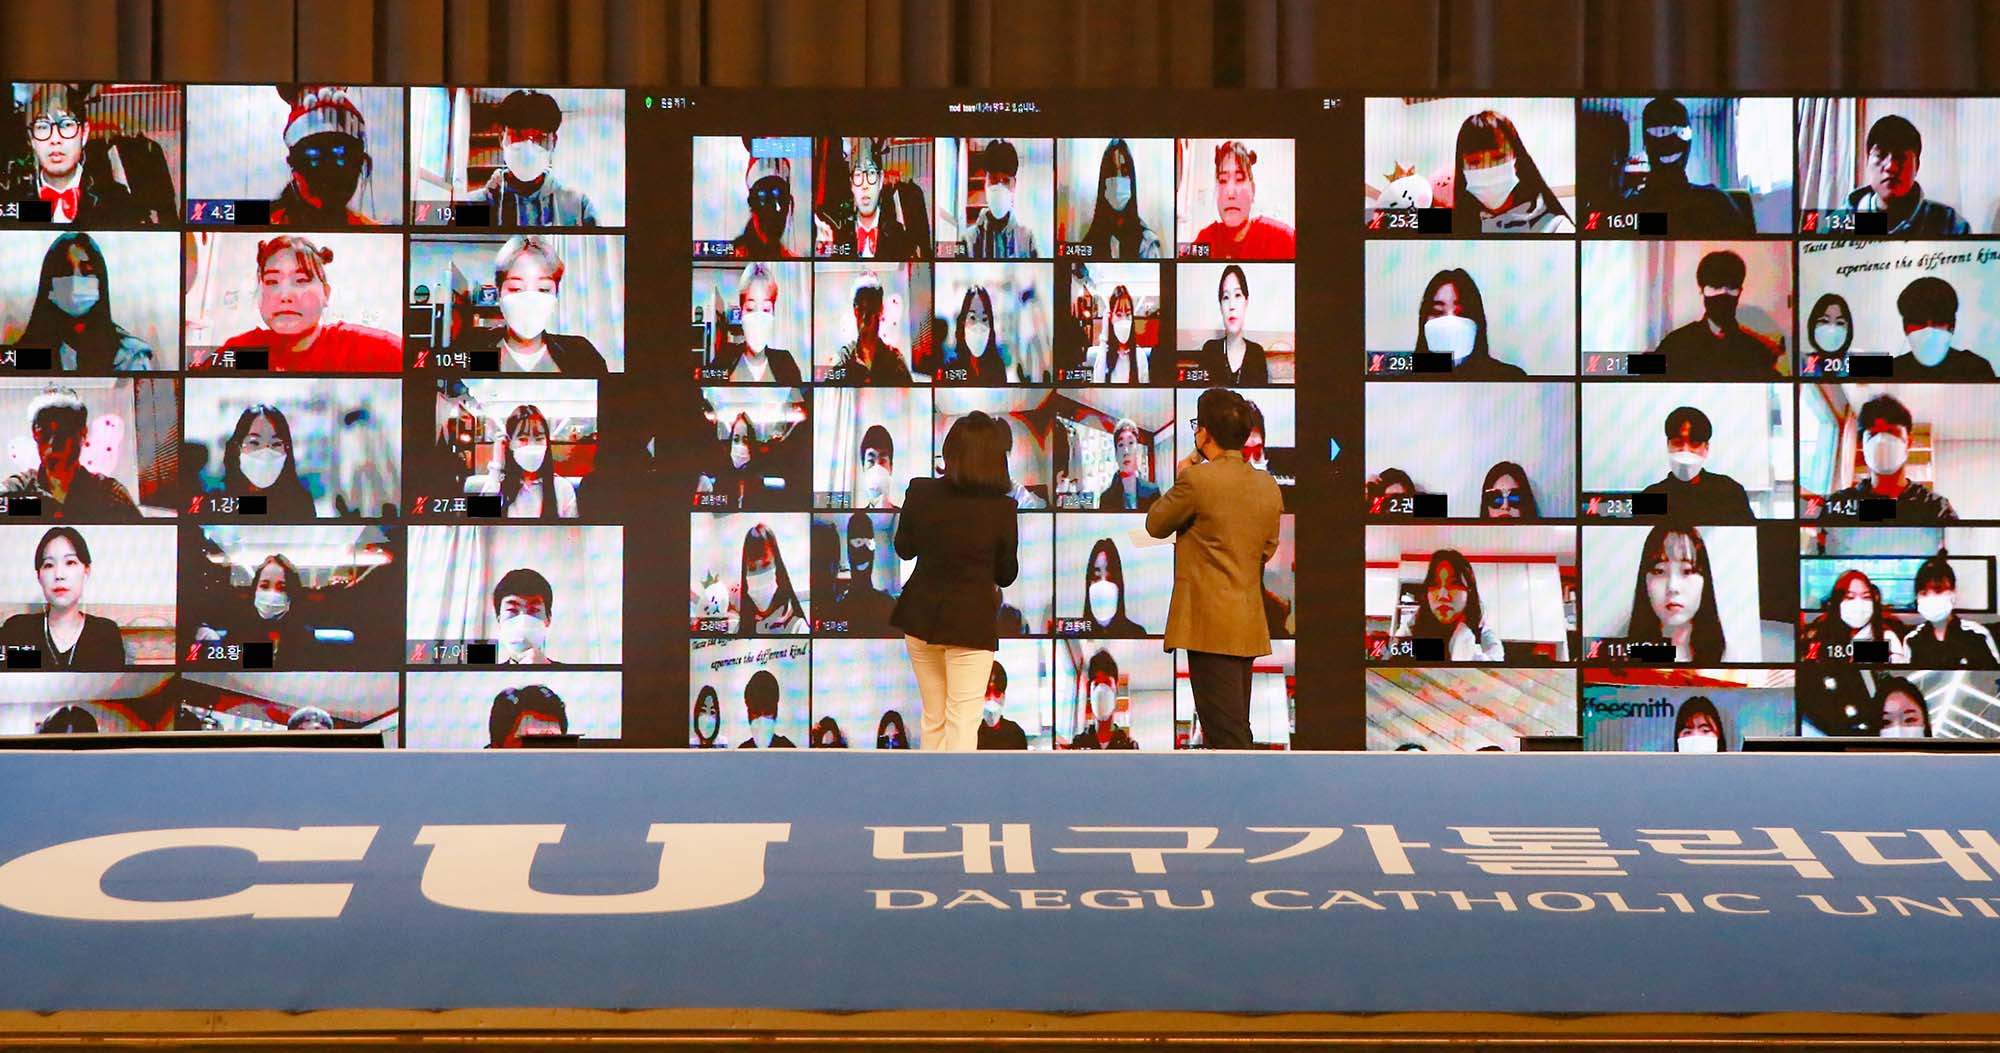 신입생 온라인 환영회 1만명 참가, 비대면 시대 신개념 행사